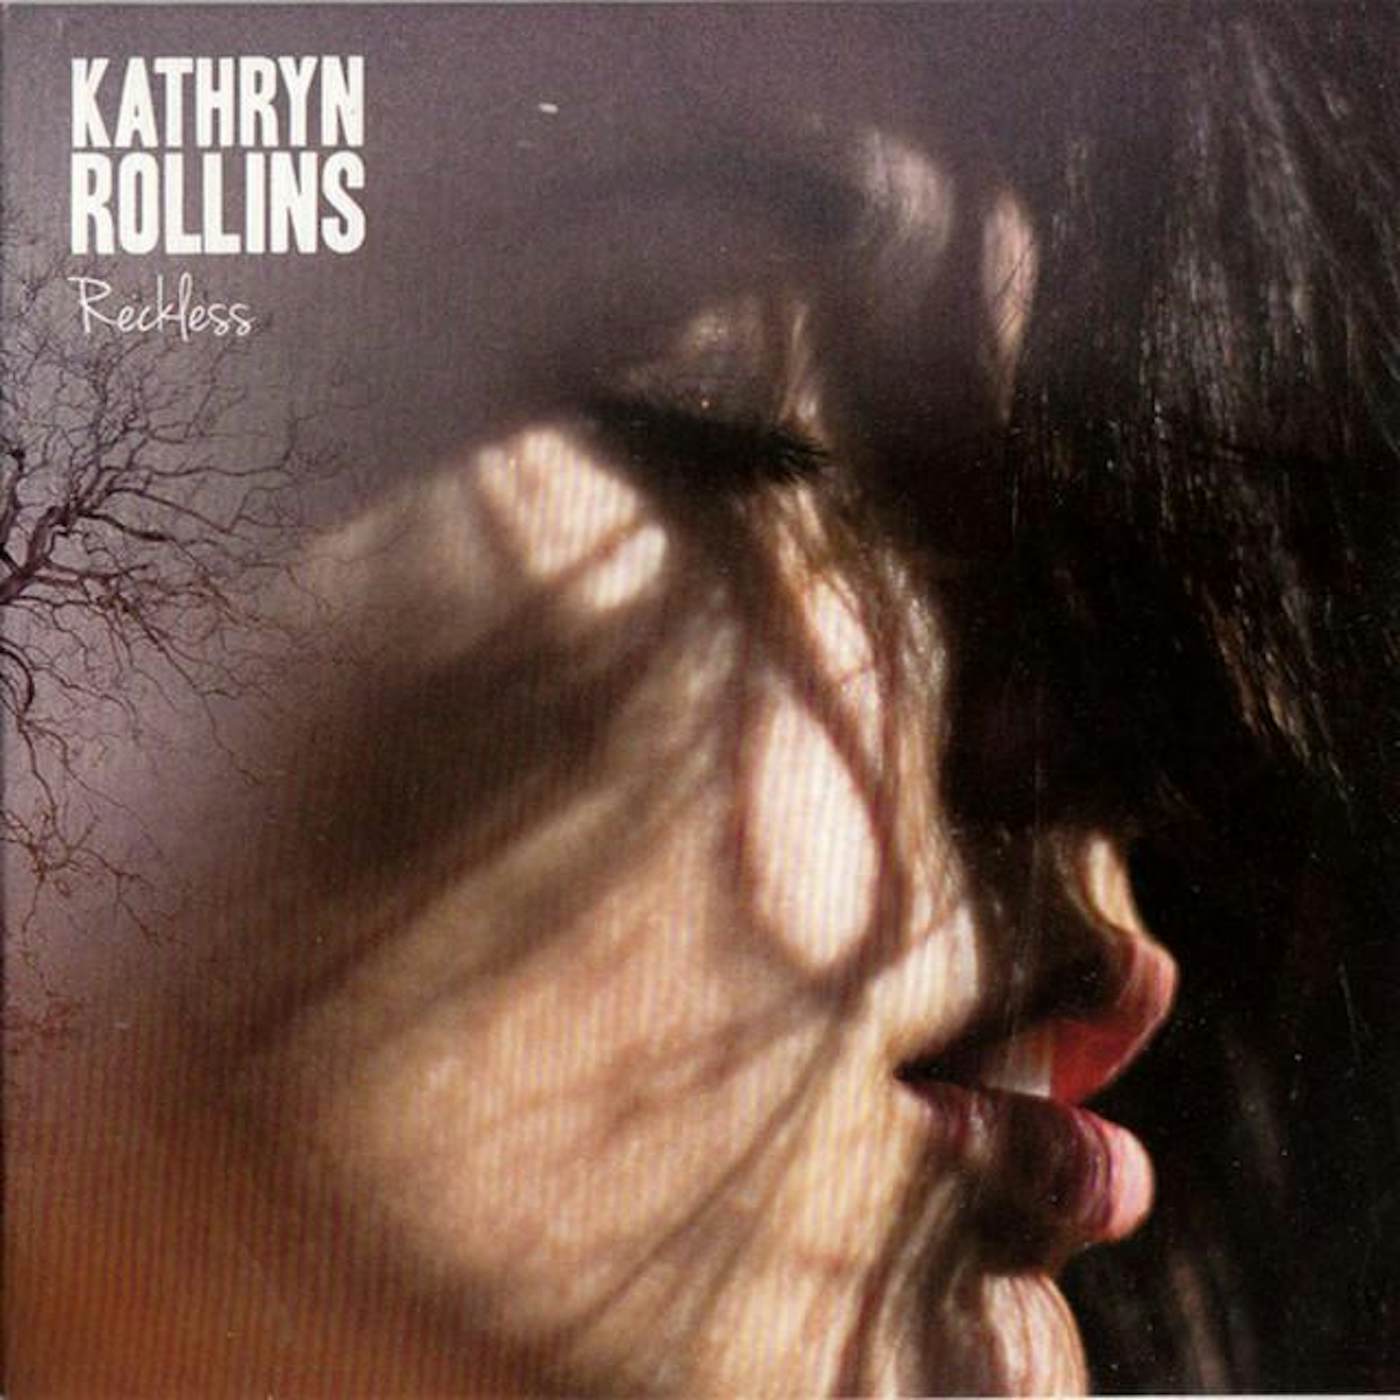 Kathryn Rollins